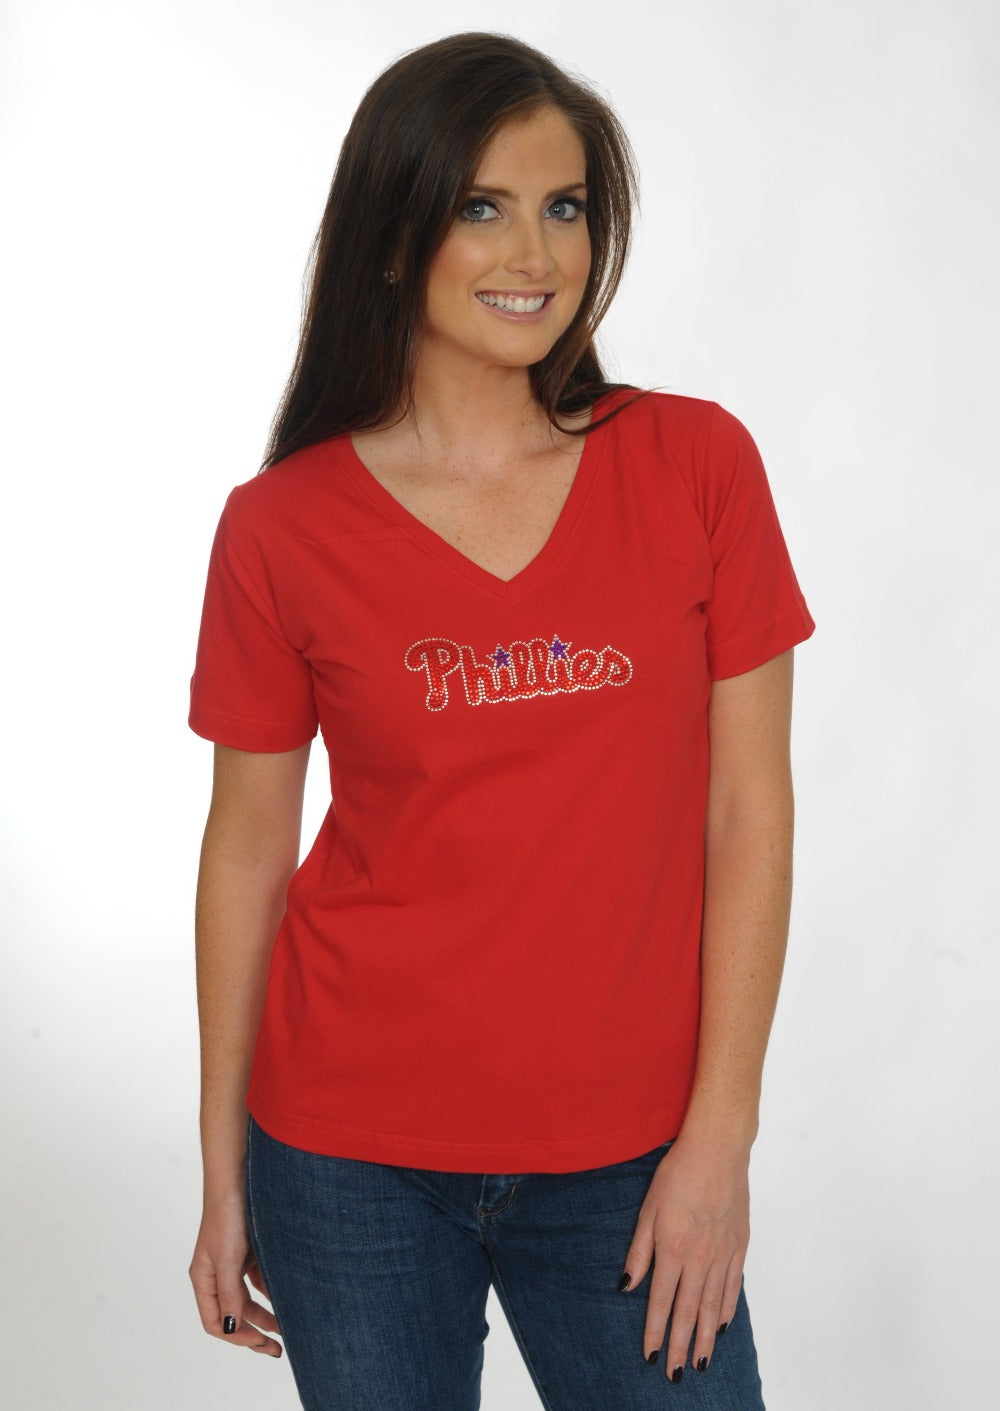 Philadelphia Phillies Red Bling Top for Women